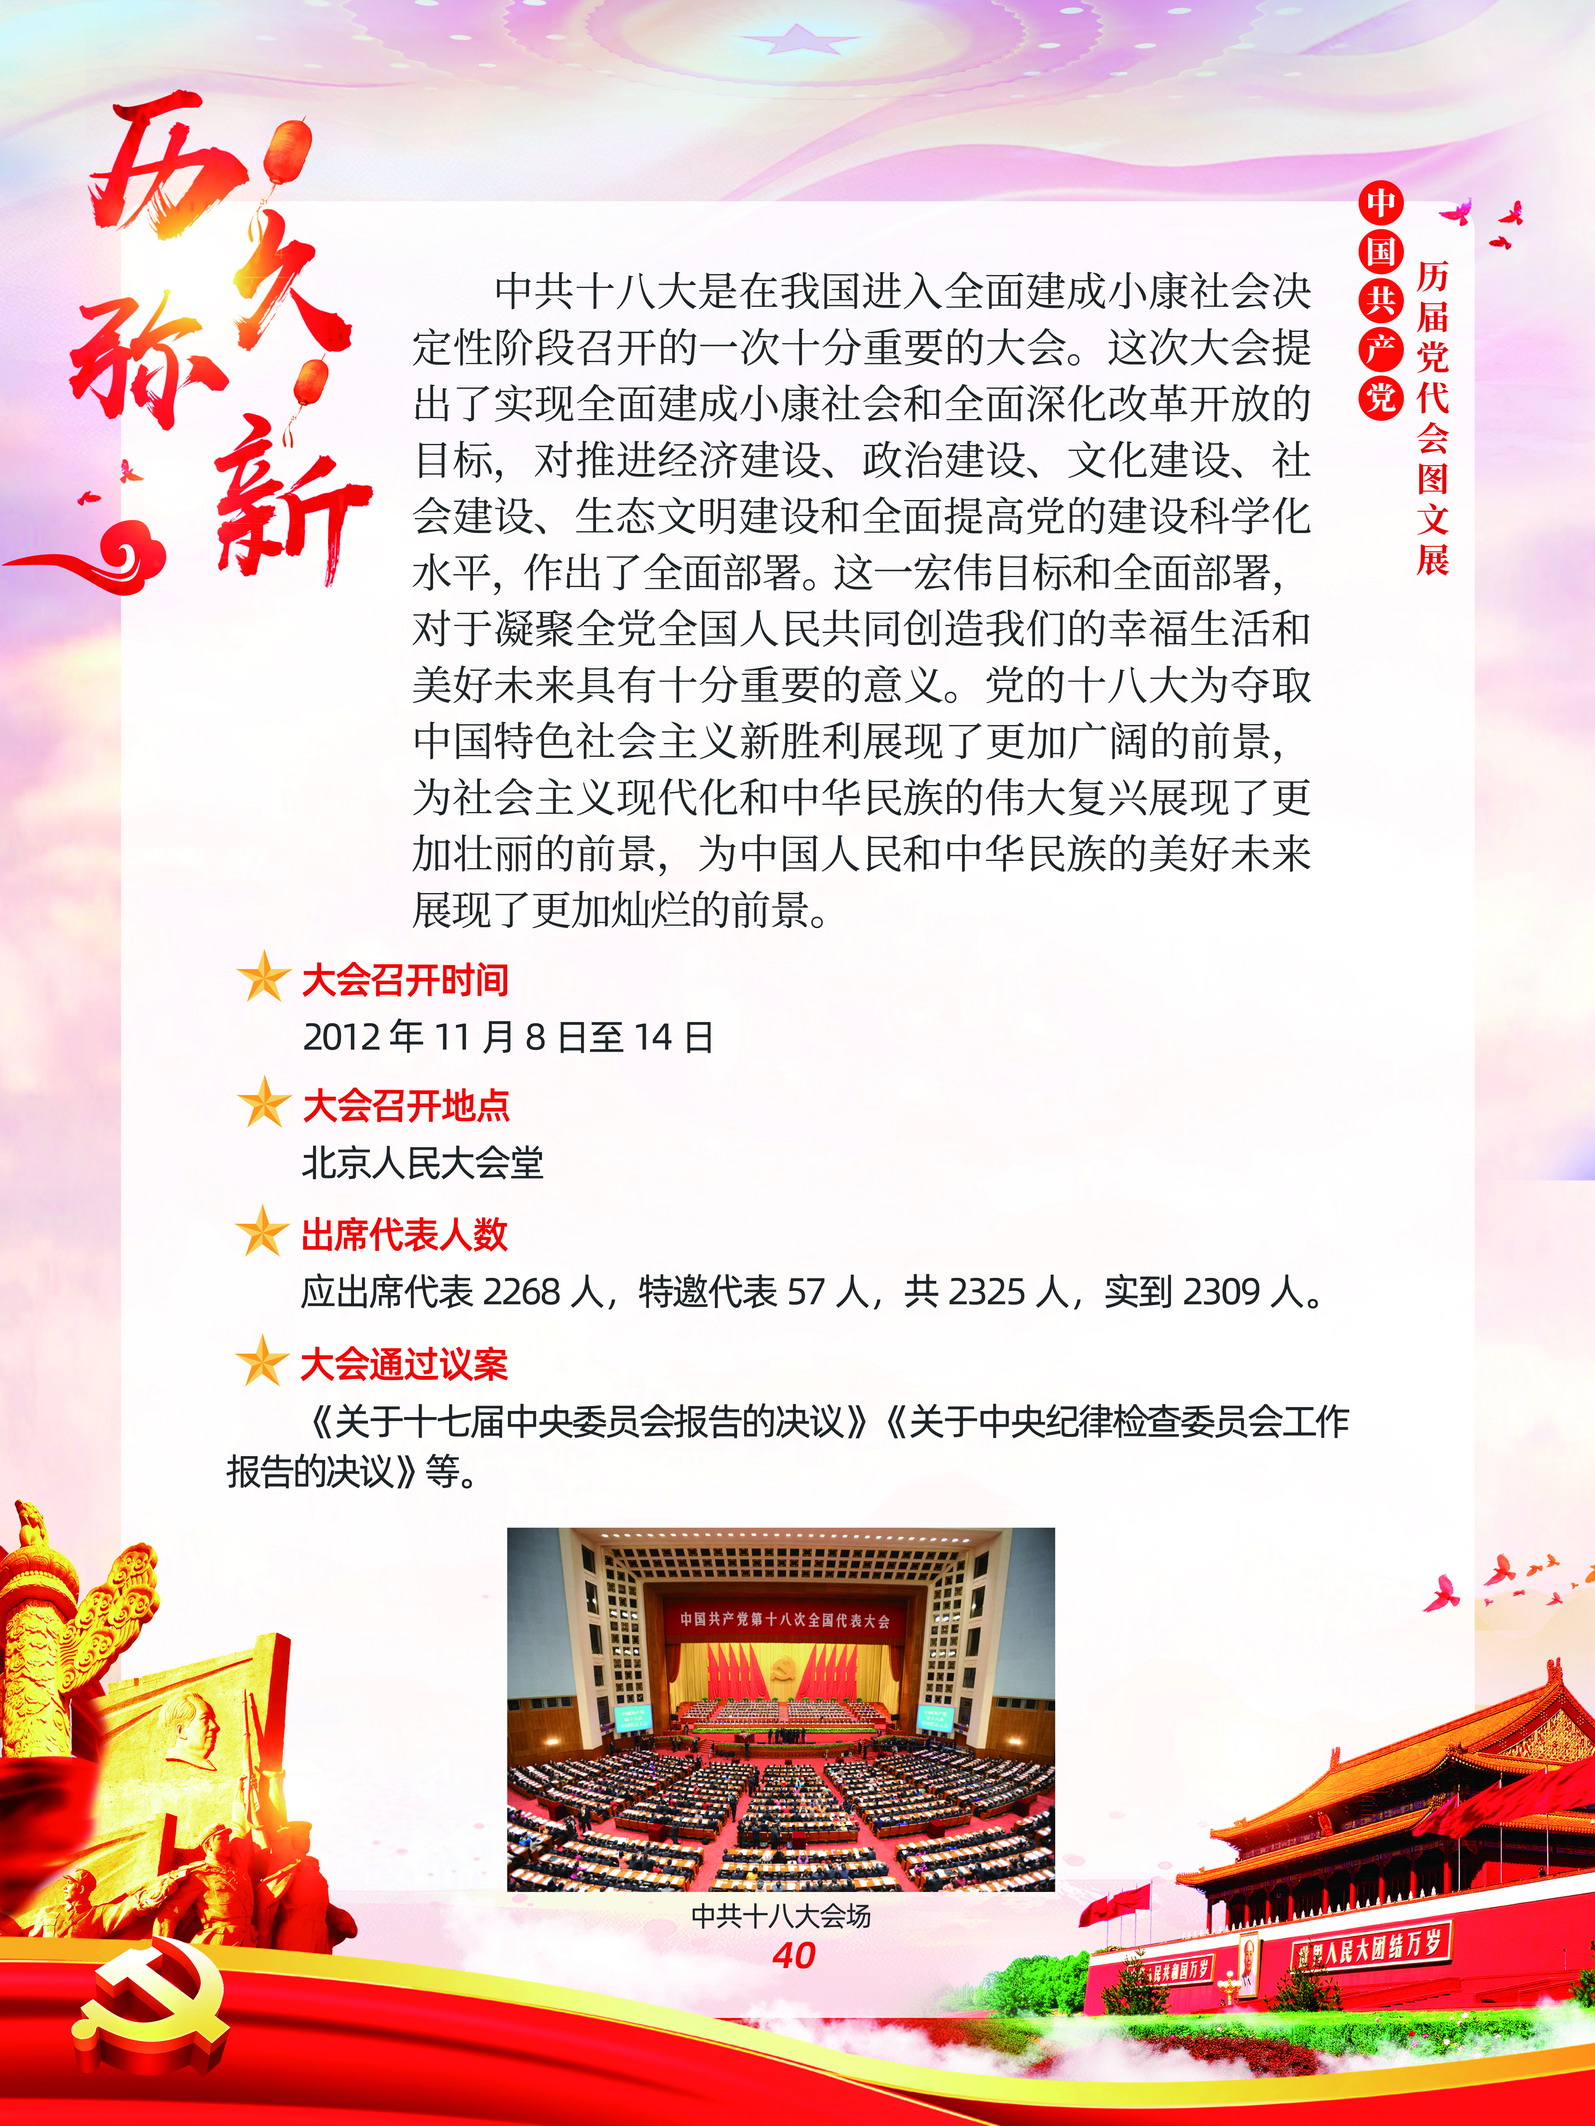 中国共产党历届党代会图文展_图39